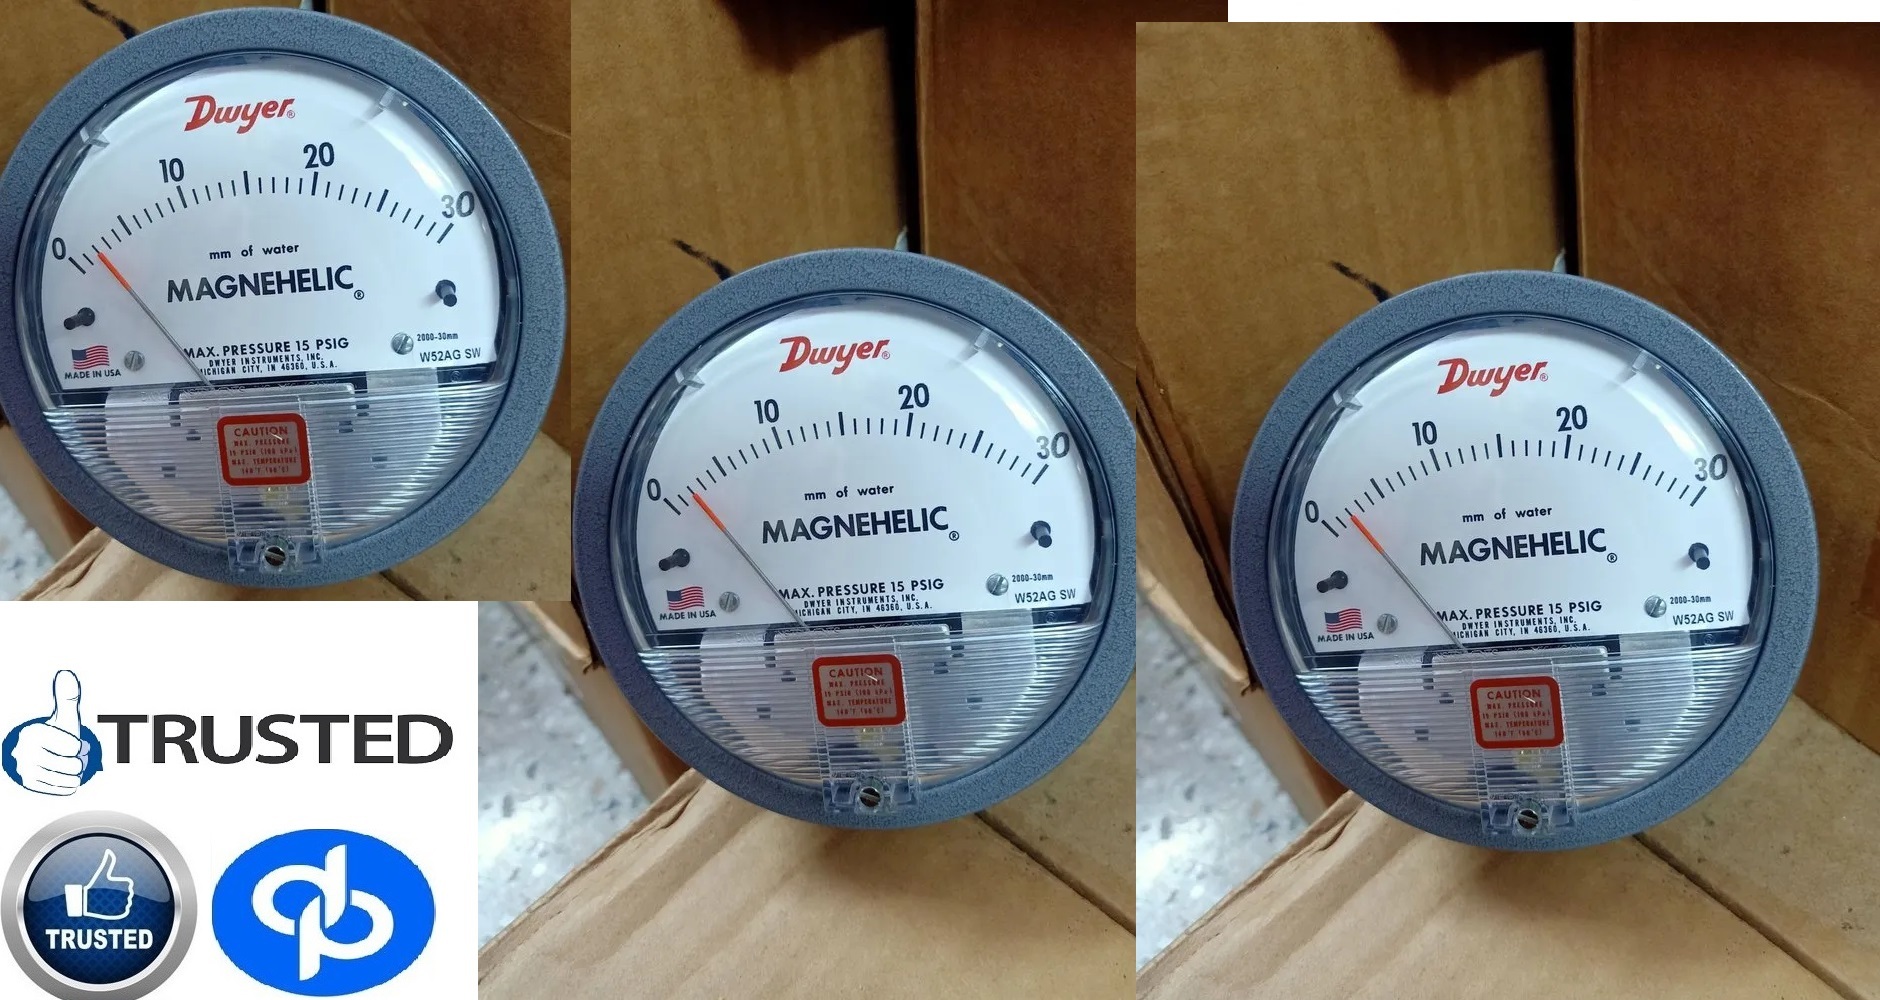 Dwyer Maghnehic gauges by Hasanpur Uttar Pradesh